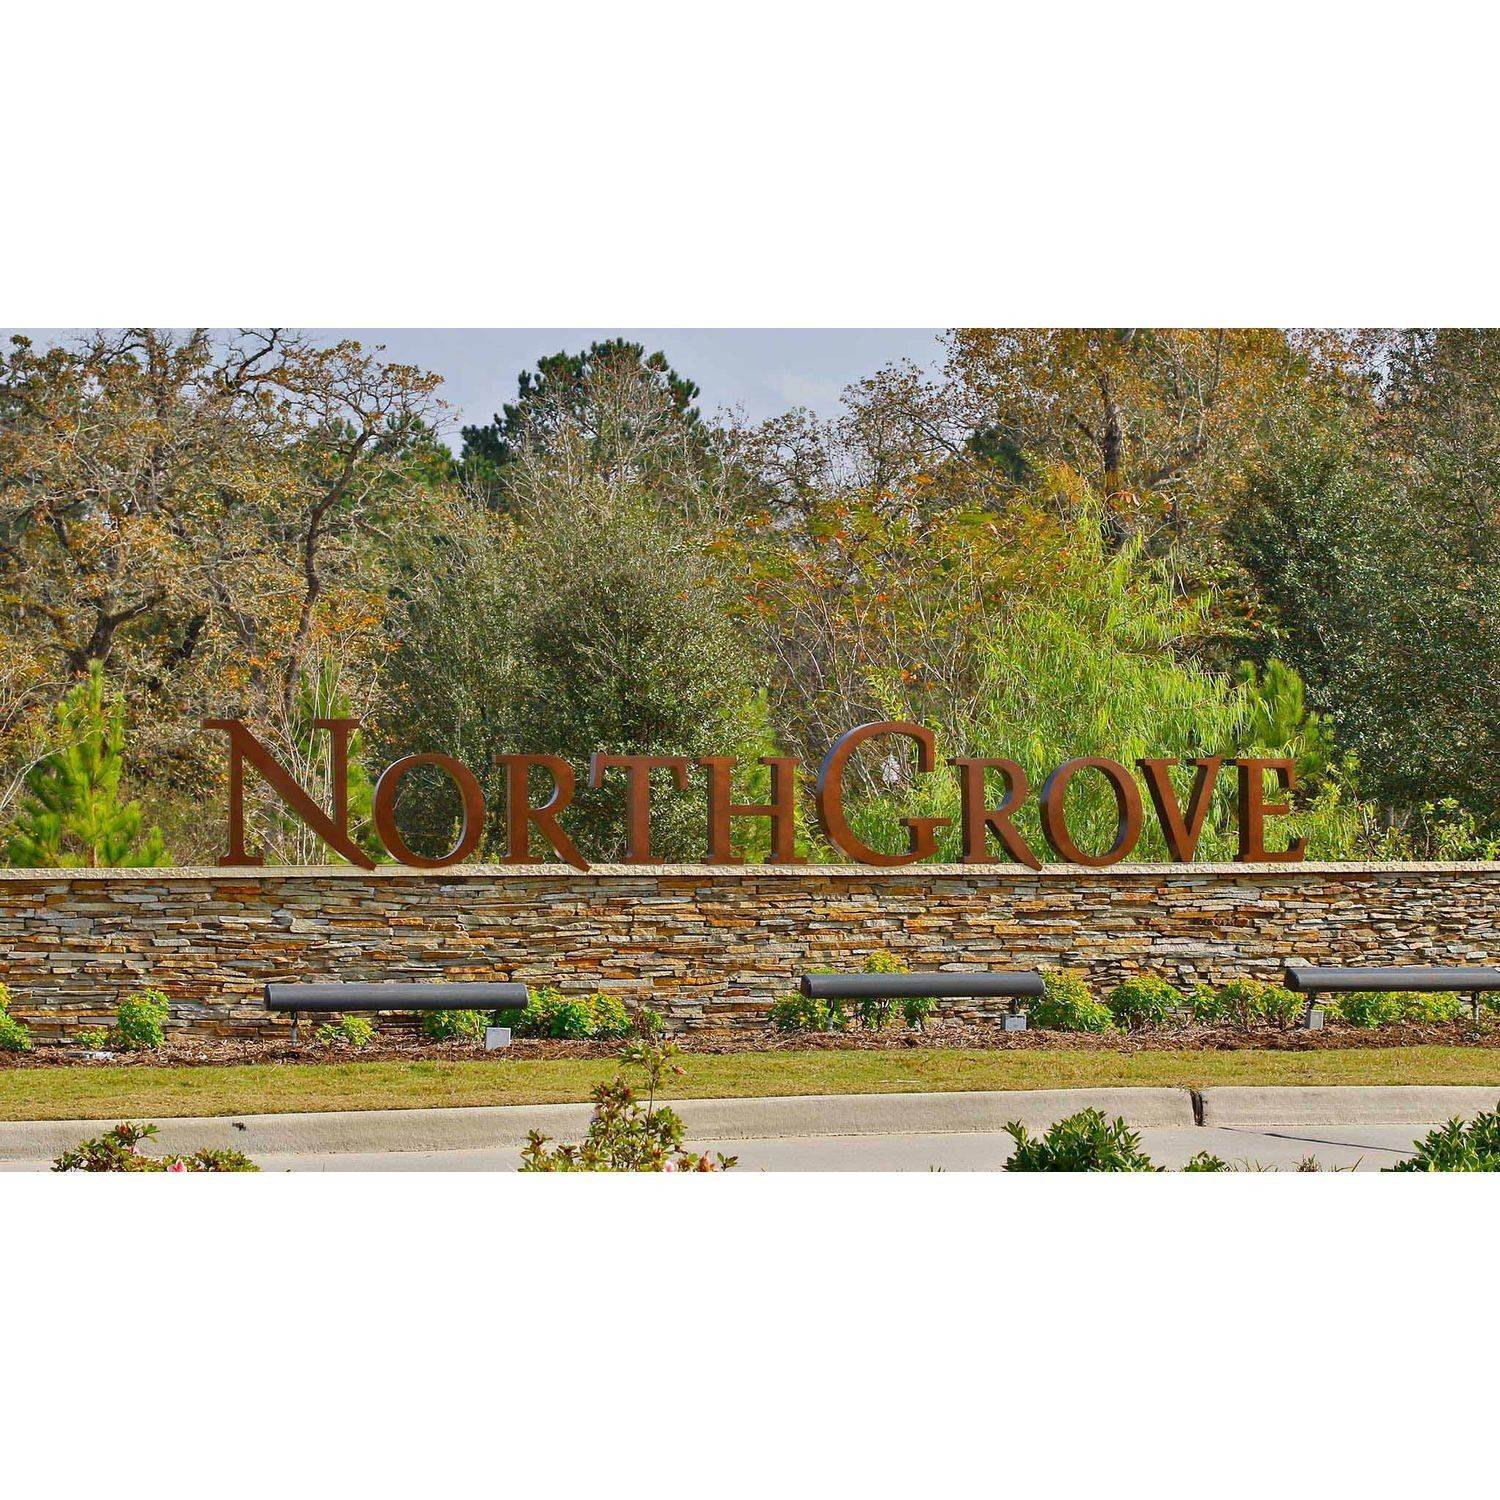 NorthGrove 50' edificio en 7385 Grandview Meadow Drive, Magnolia, TX 77354